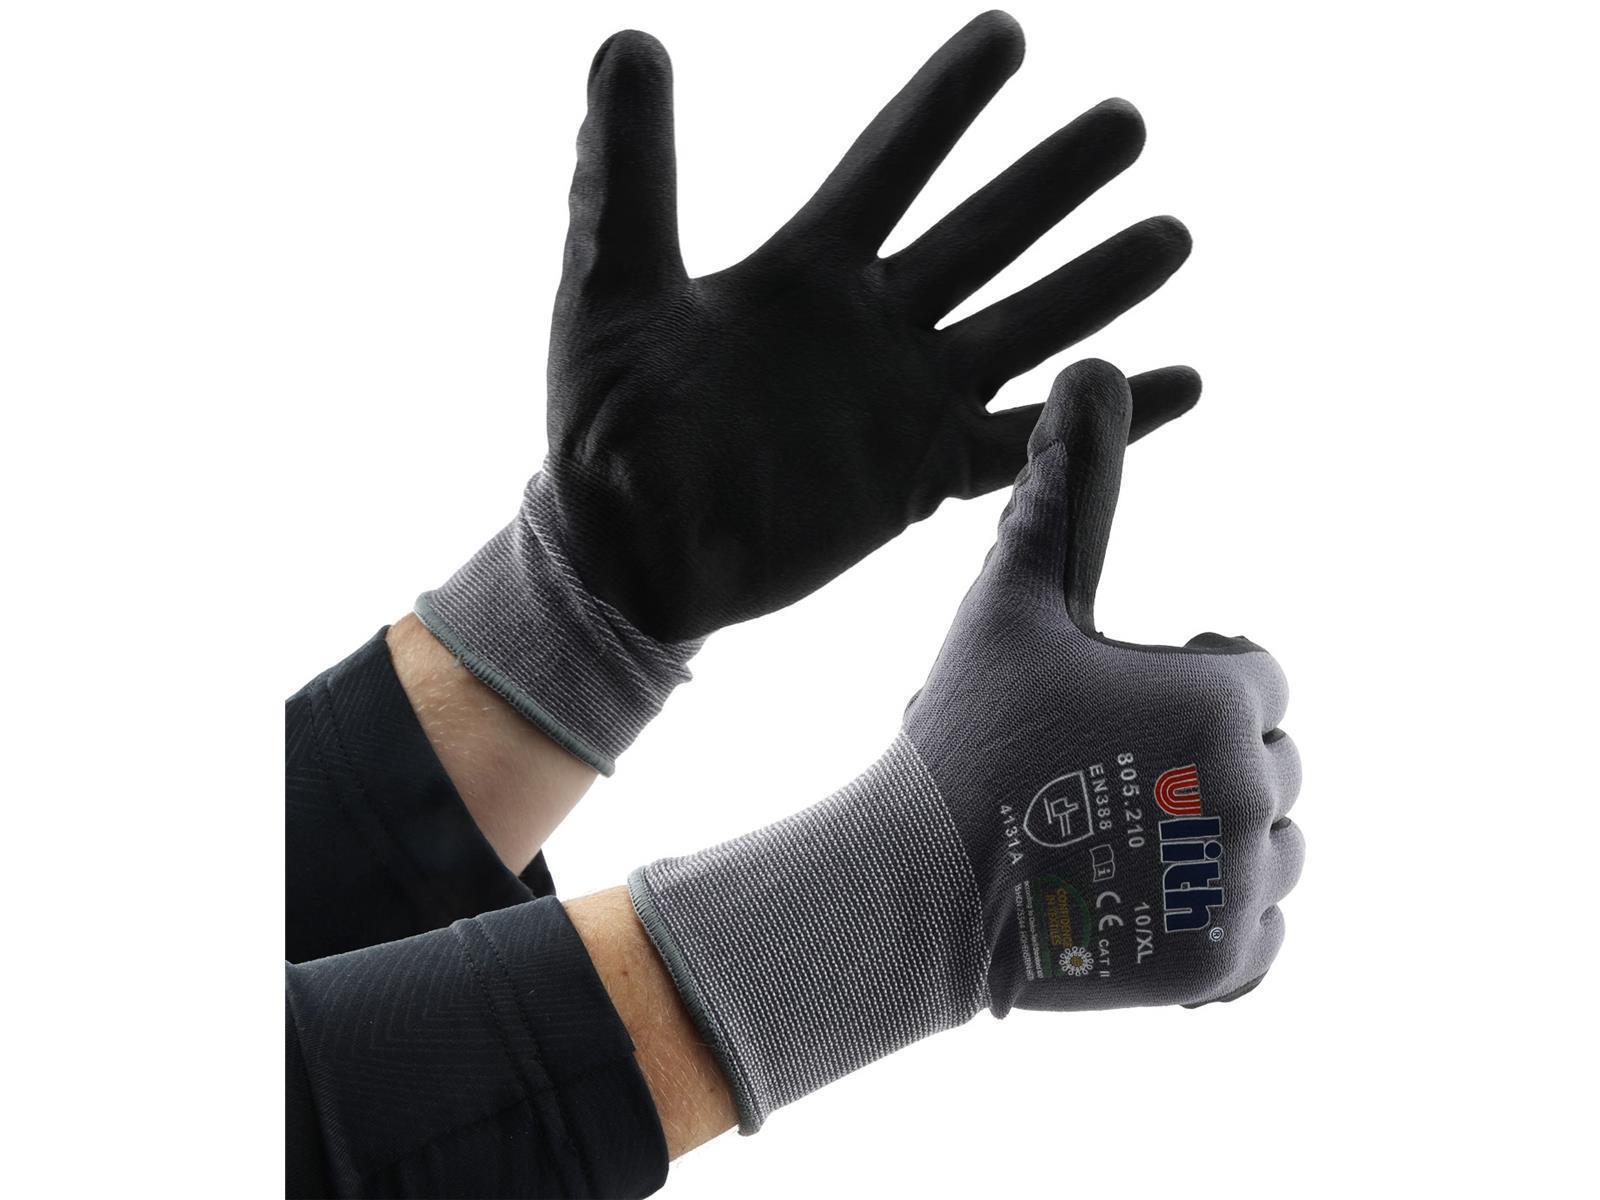 Profi Arbeits-Handschuhe mit Kautschuk-Beschichtung, Ökotex 100, Größe 11